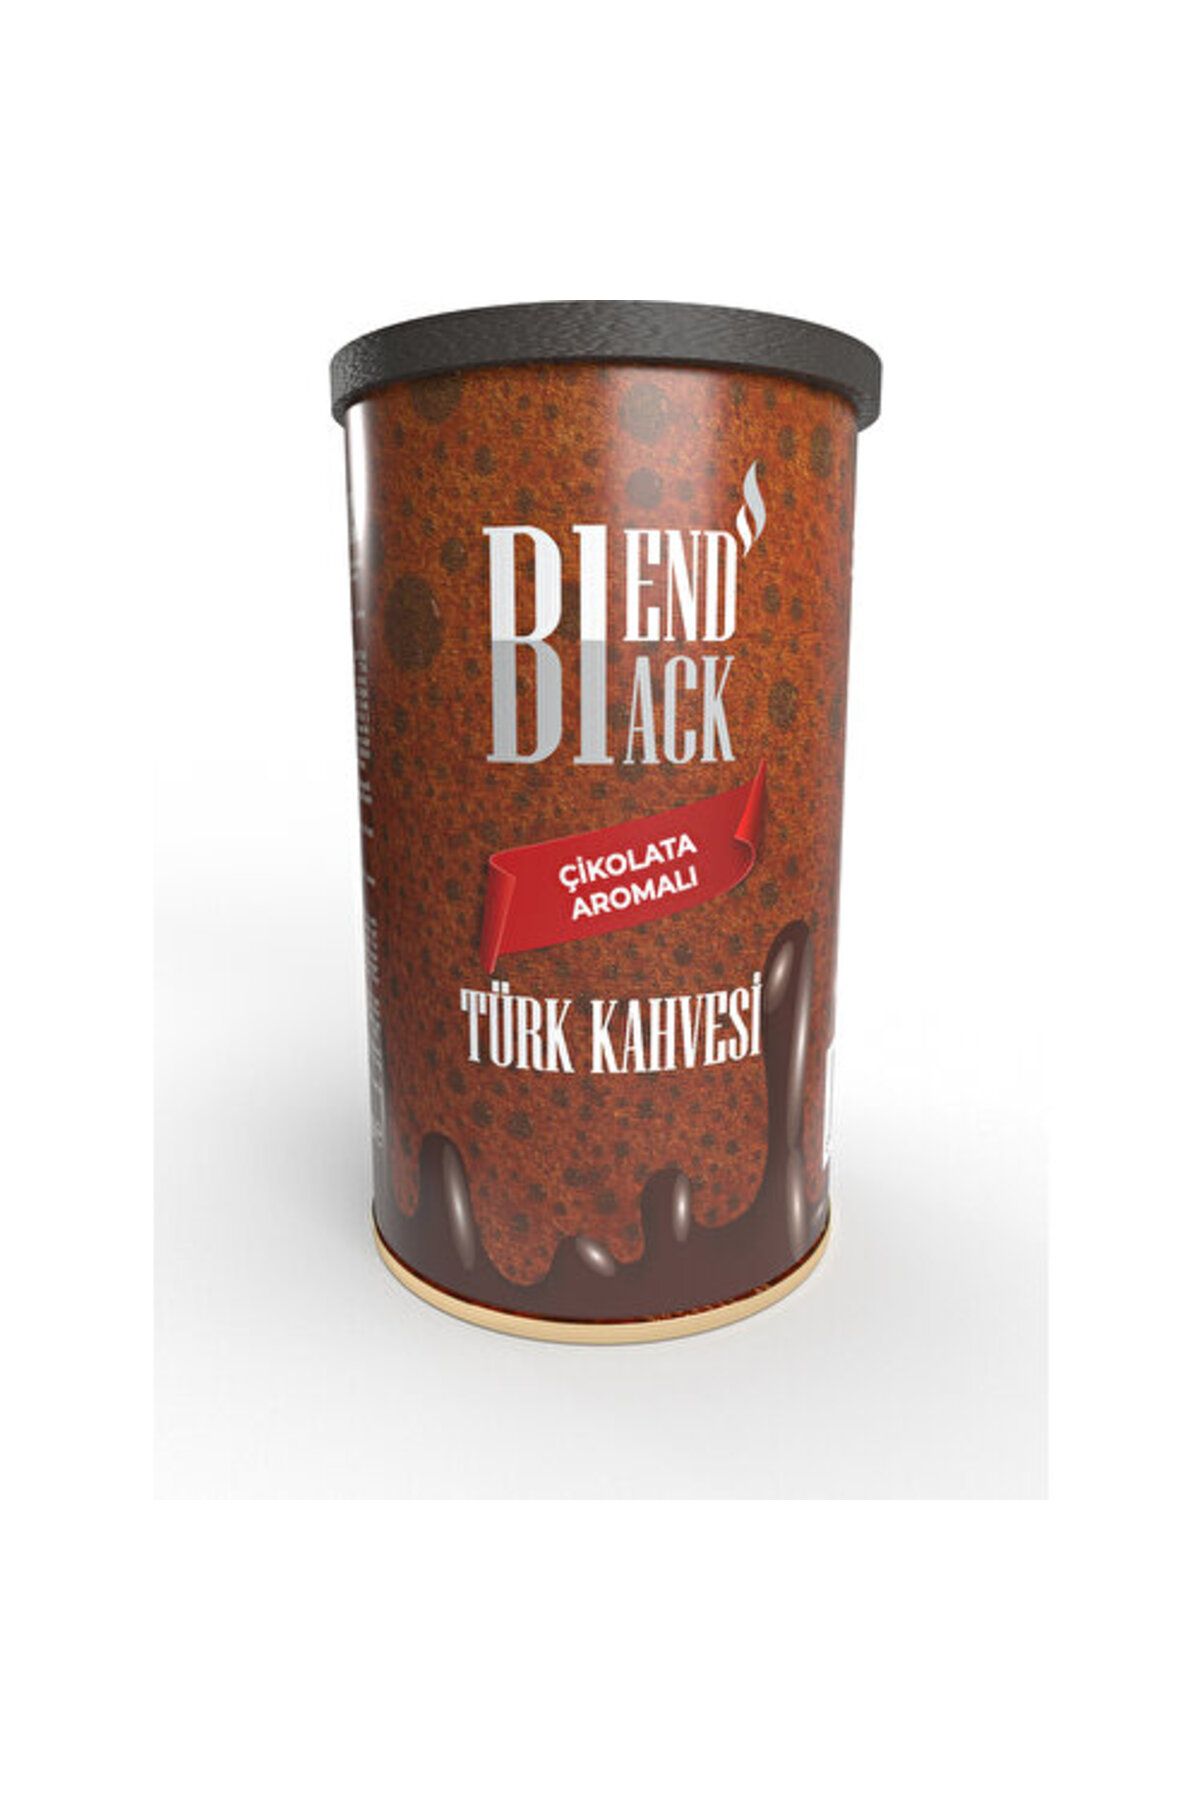 Blendblack Çikolata Aromalı Türk Kahvesi Teneke Kutu 250 gr